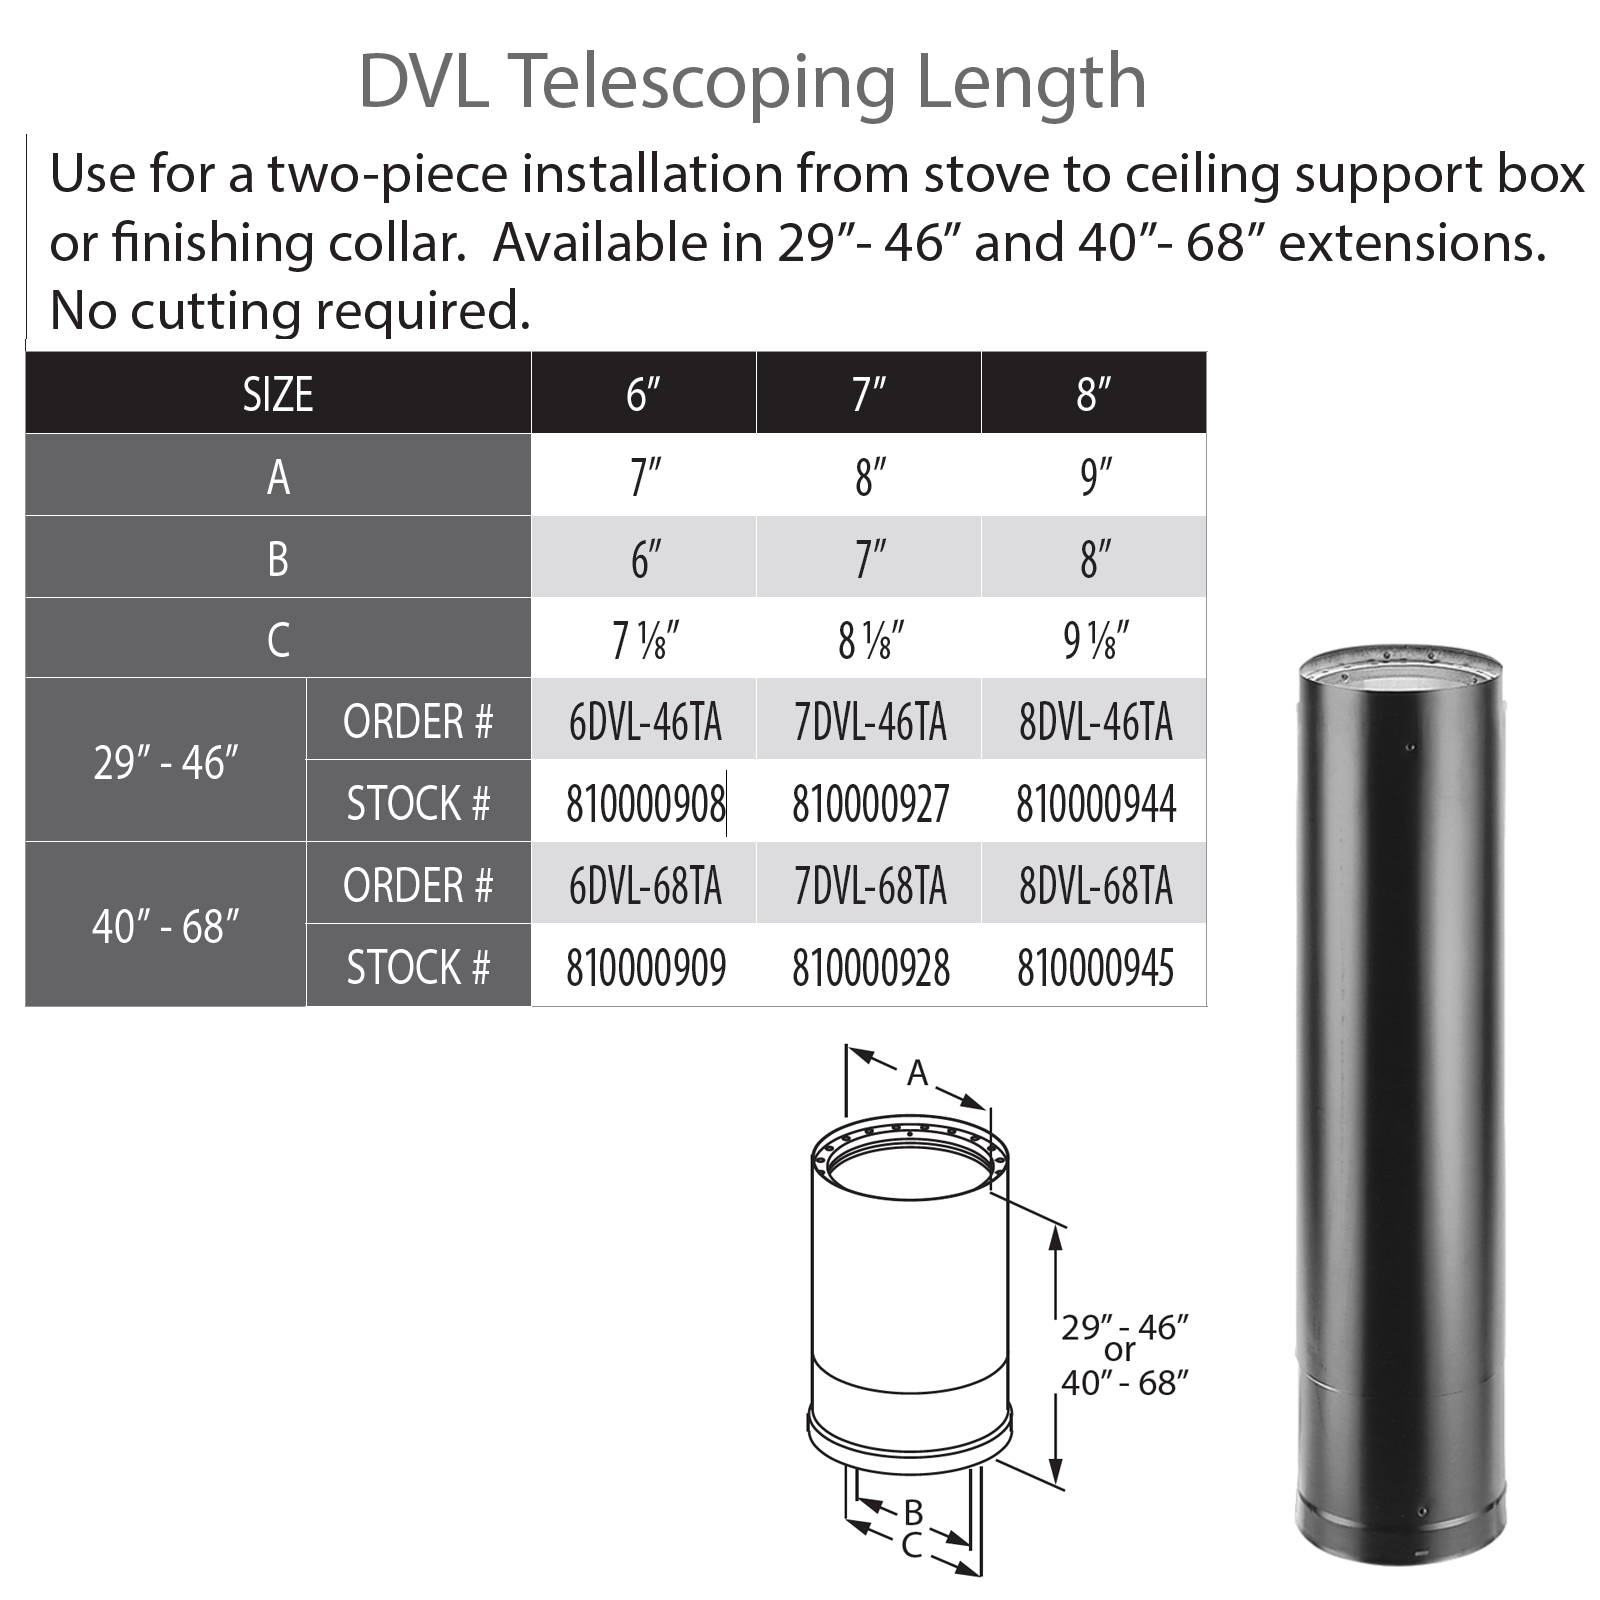 DuraVent DVL 8" Diameter Telescoping Length 29" - 46" | 8DVL-46TA